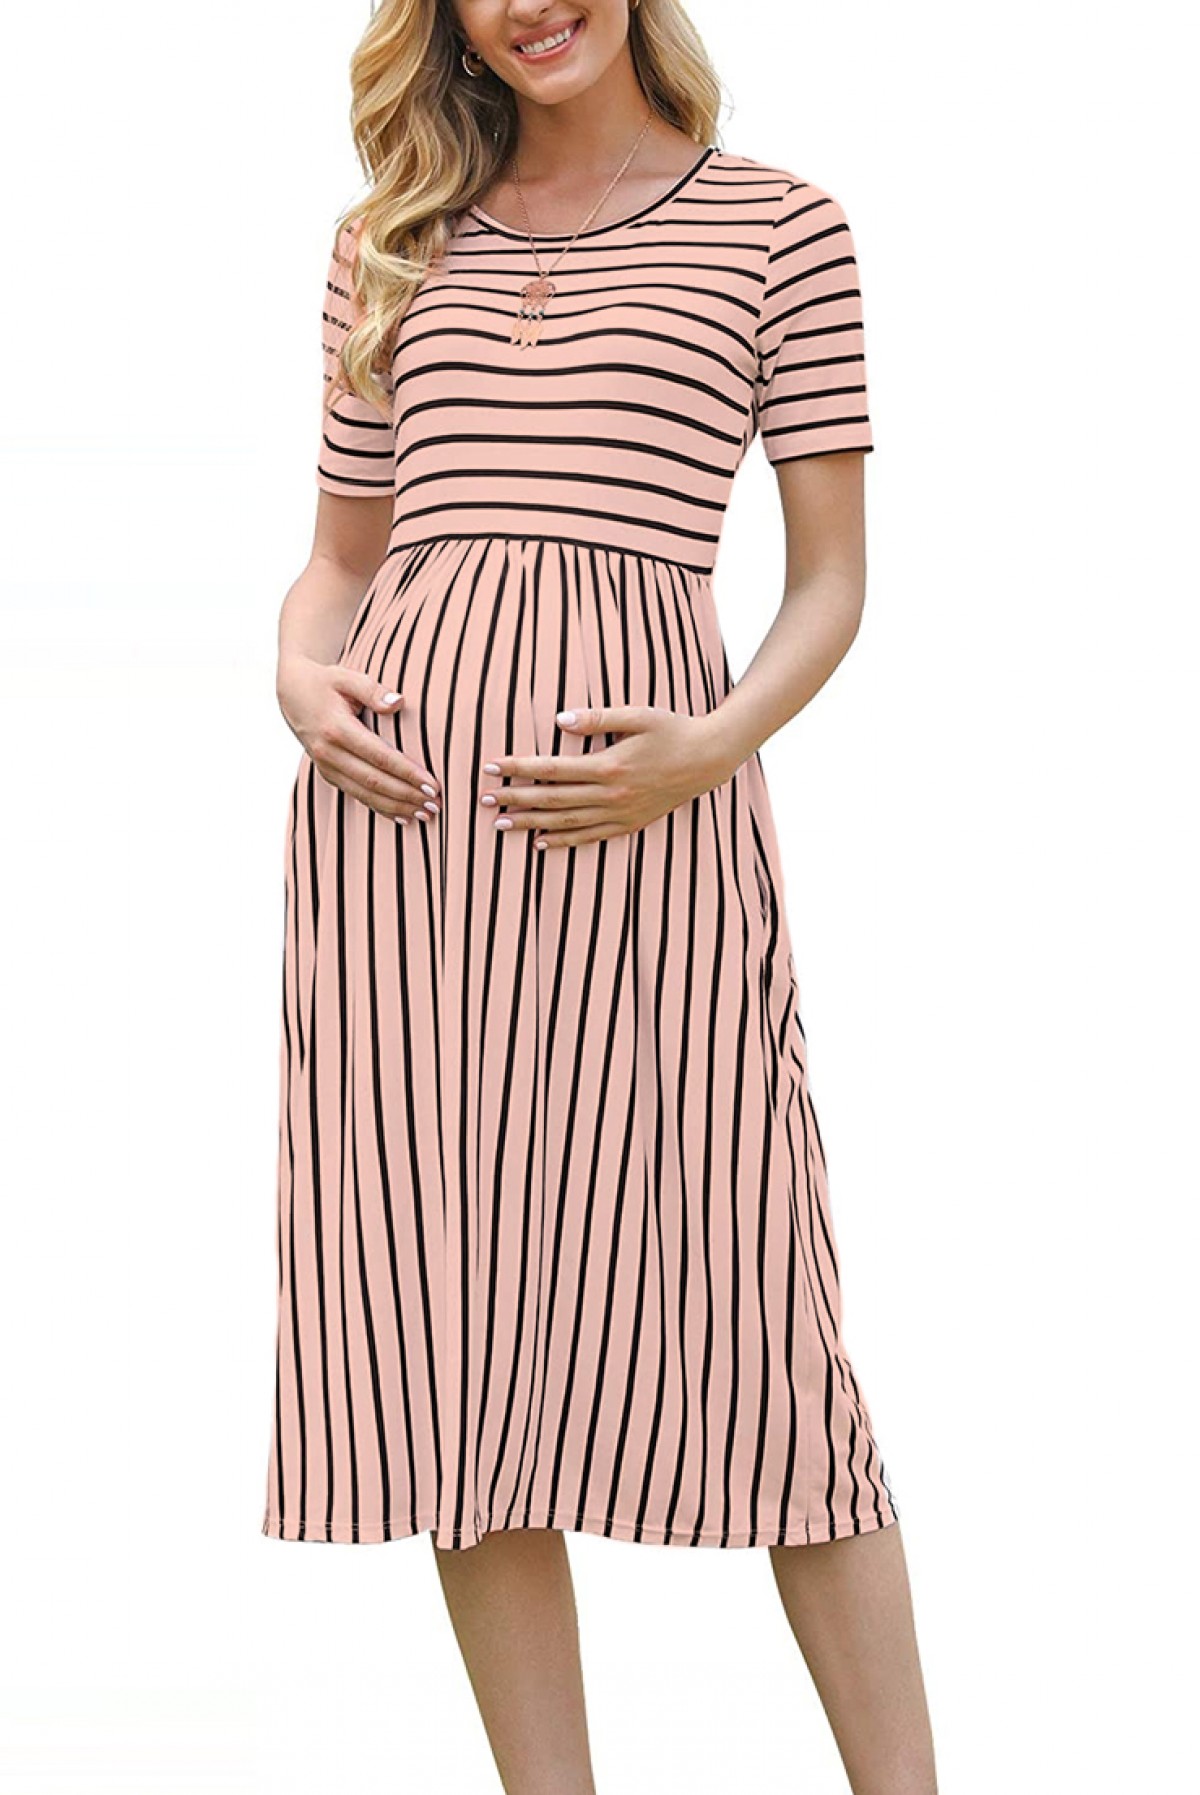 Description details Shed Haine pentru gravide | IVET.RO îmbrăcăminte femei și bărbați , lenjerie de  corp, încălțăminte, accesorii